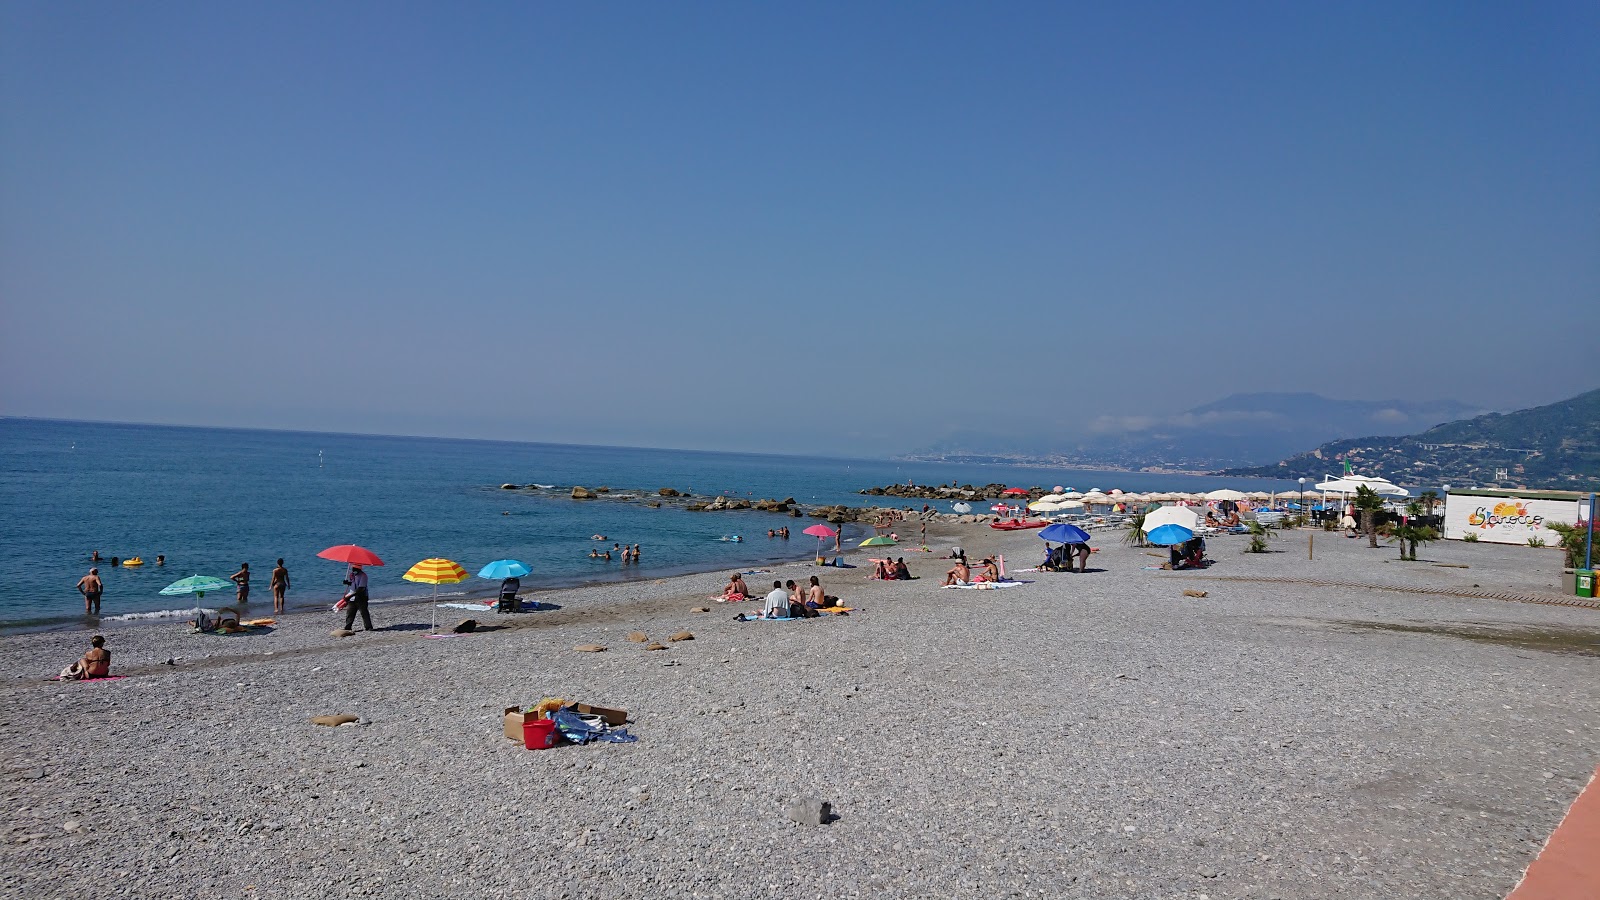 Fotografija Spiaggia Ventimiglia z modra voda površino